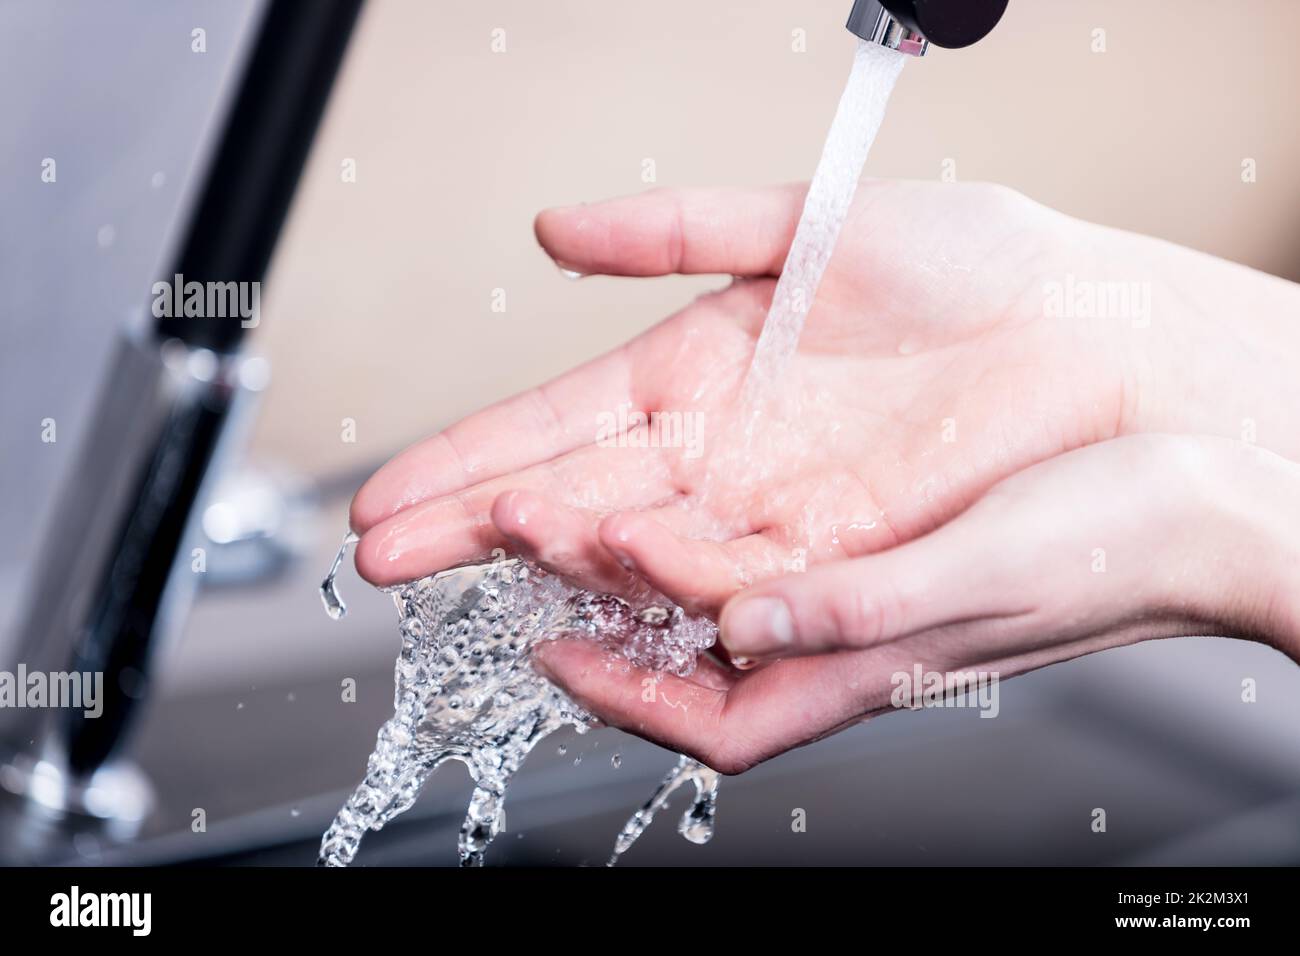 Mujer lavarse las manos con agua corriente Foto de stock